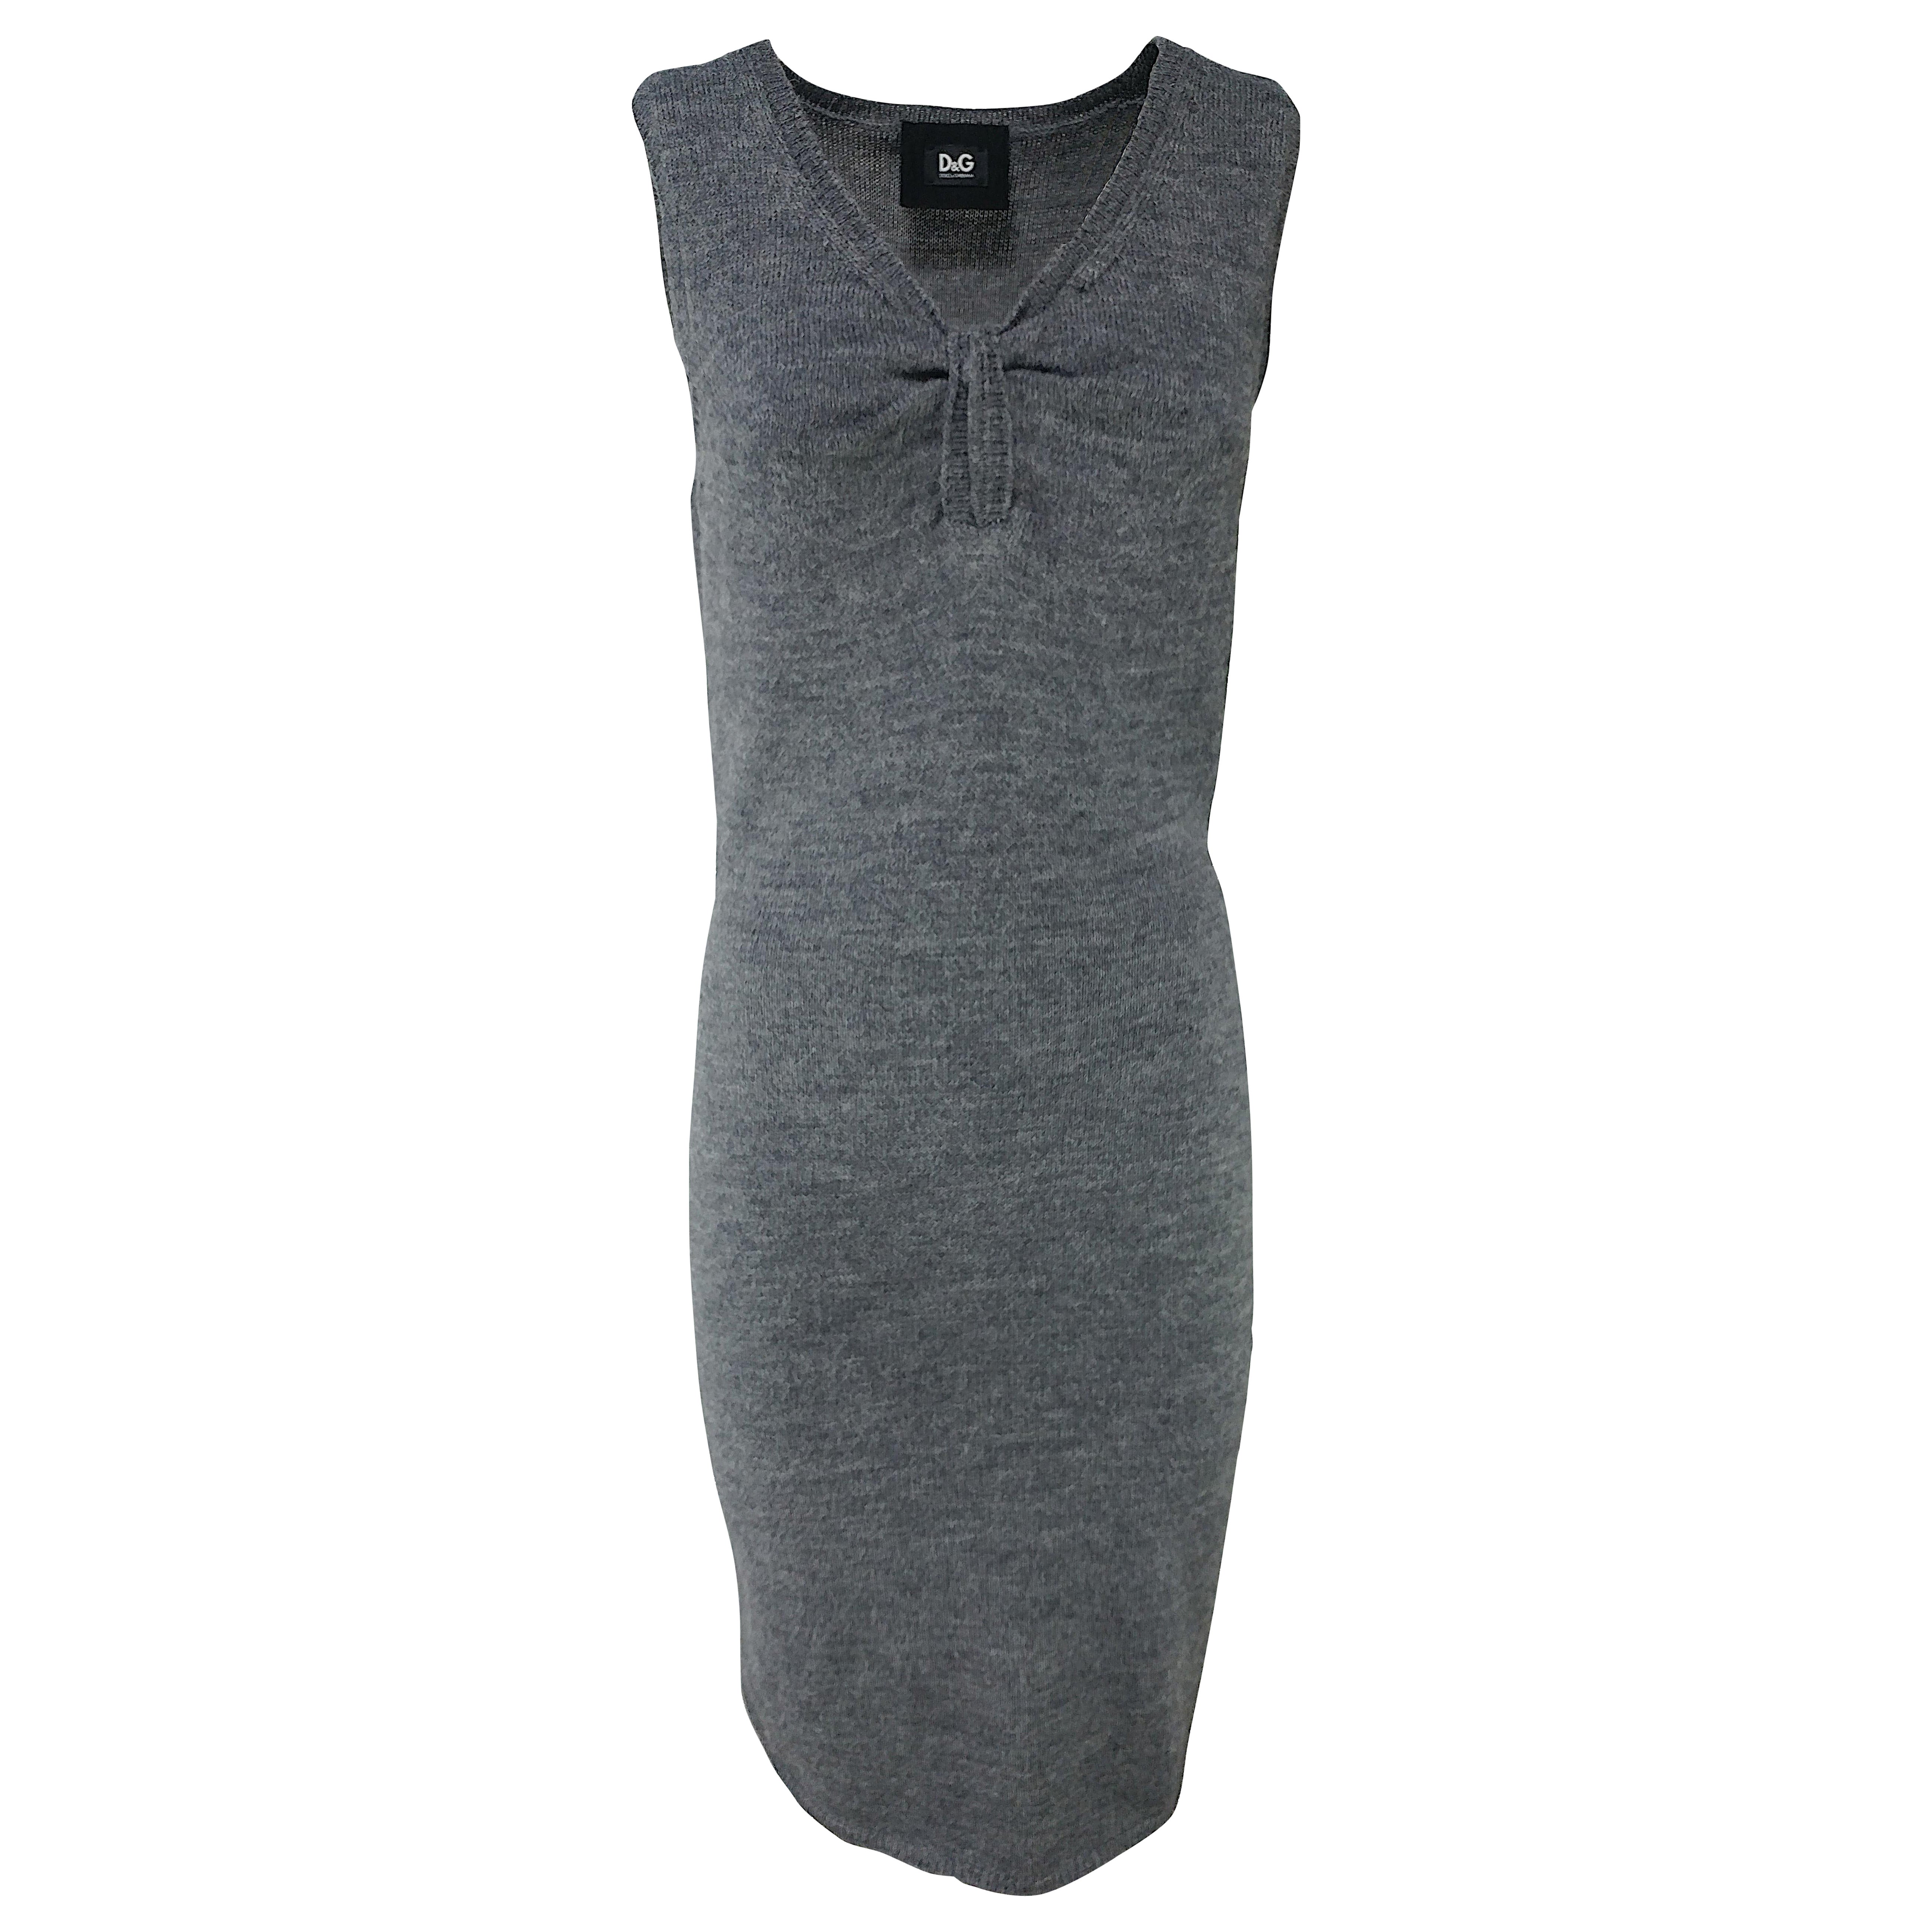 DOLCE & GABBANA - Grey Alpaca Wool Knit Bodycon Sleeveless Dress  Size 6US 38EU